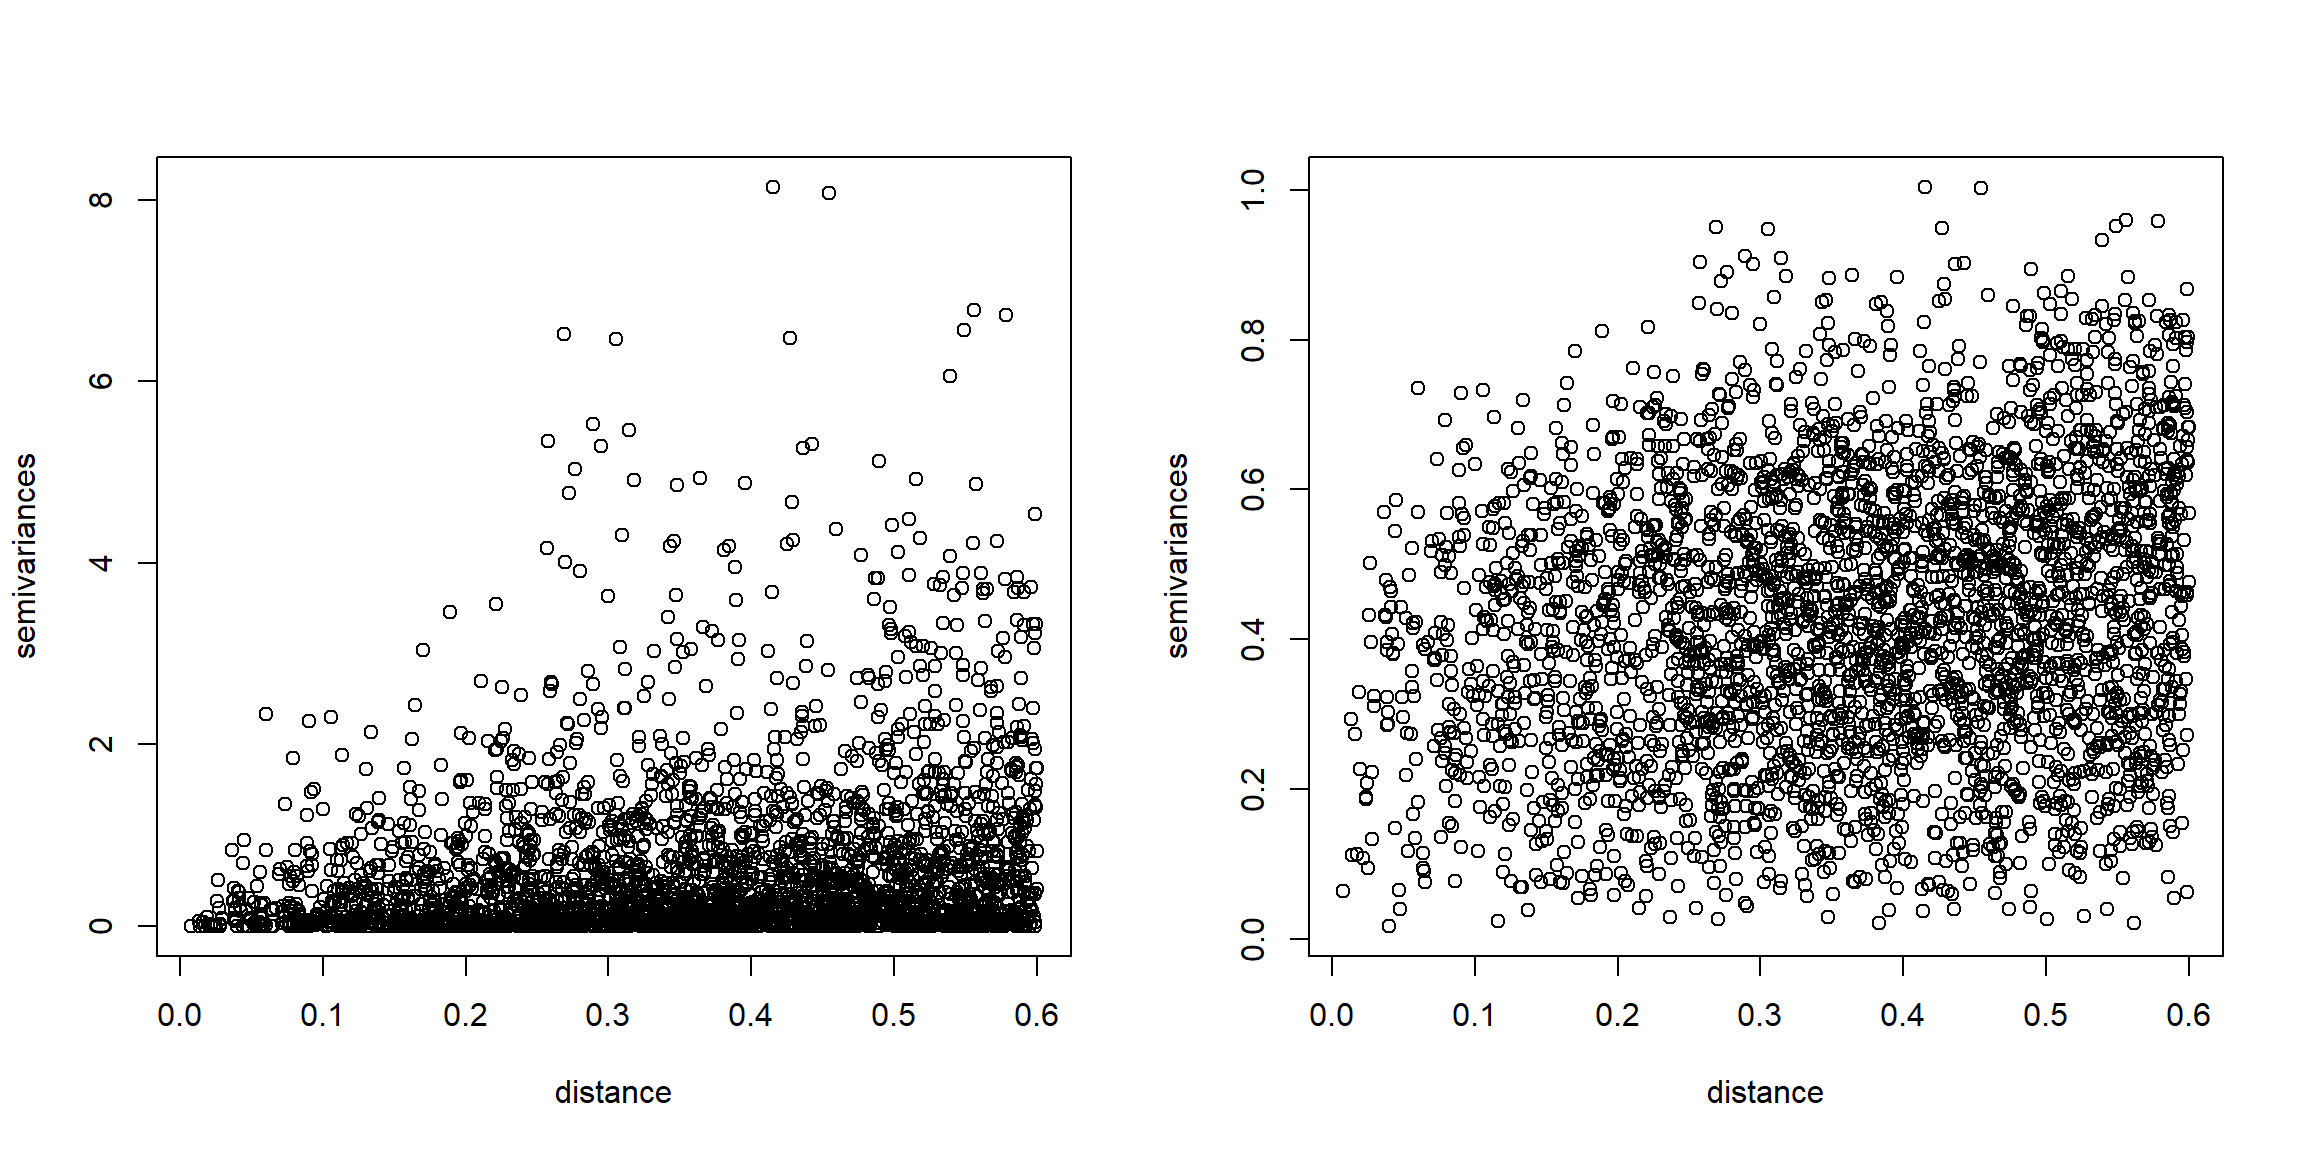 Nubes de semivarianzas clásicas (izquierda) y robustas (derecha) del conjunto de datos simulado.